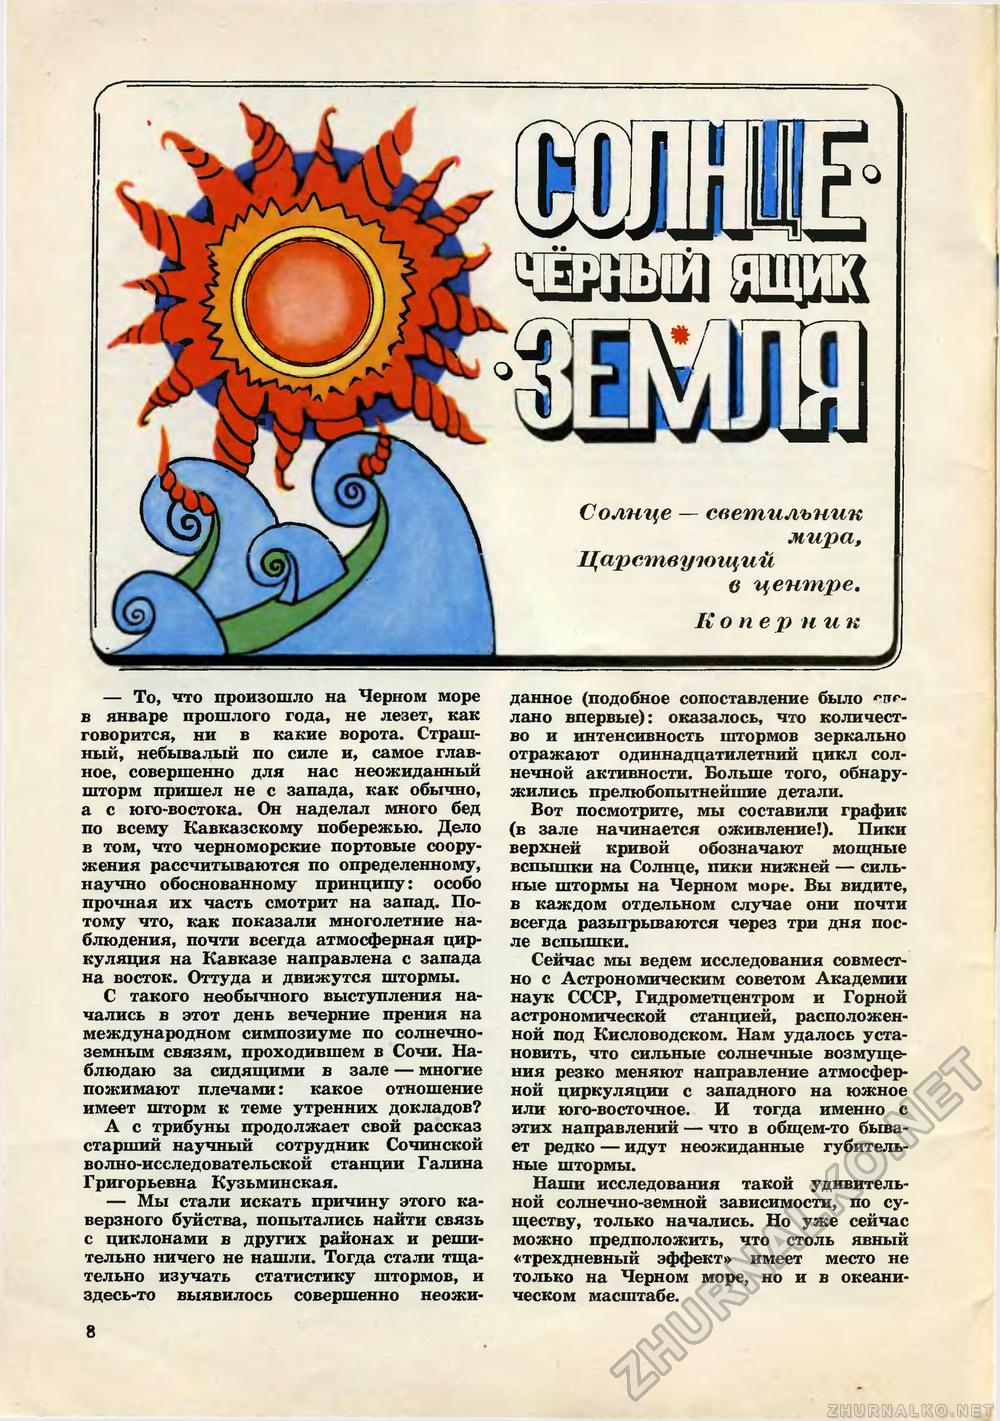   1970-07,  10